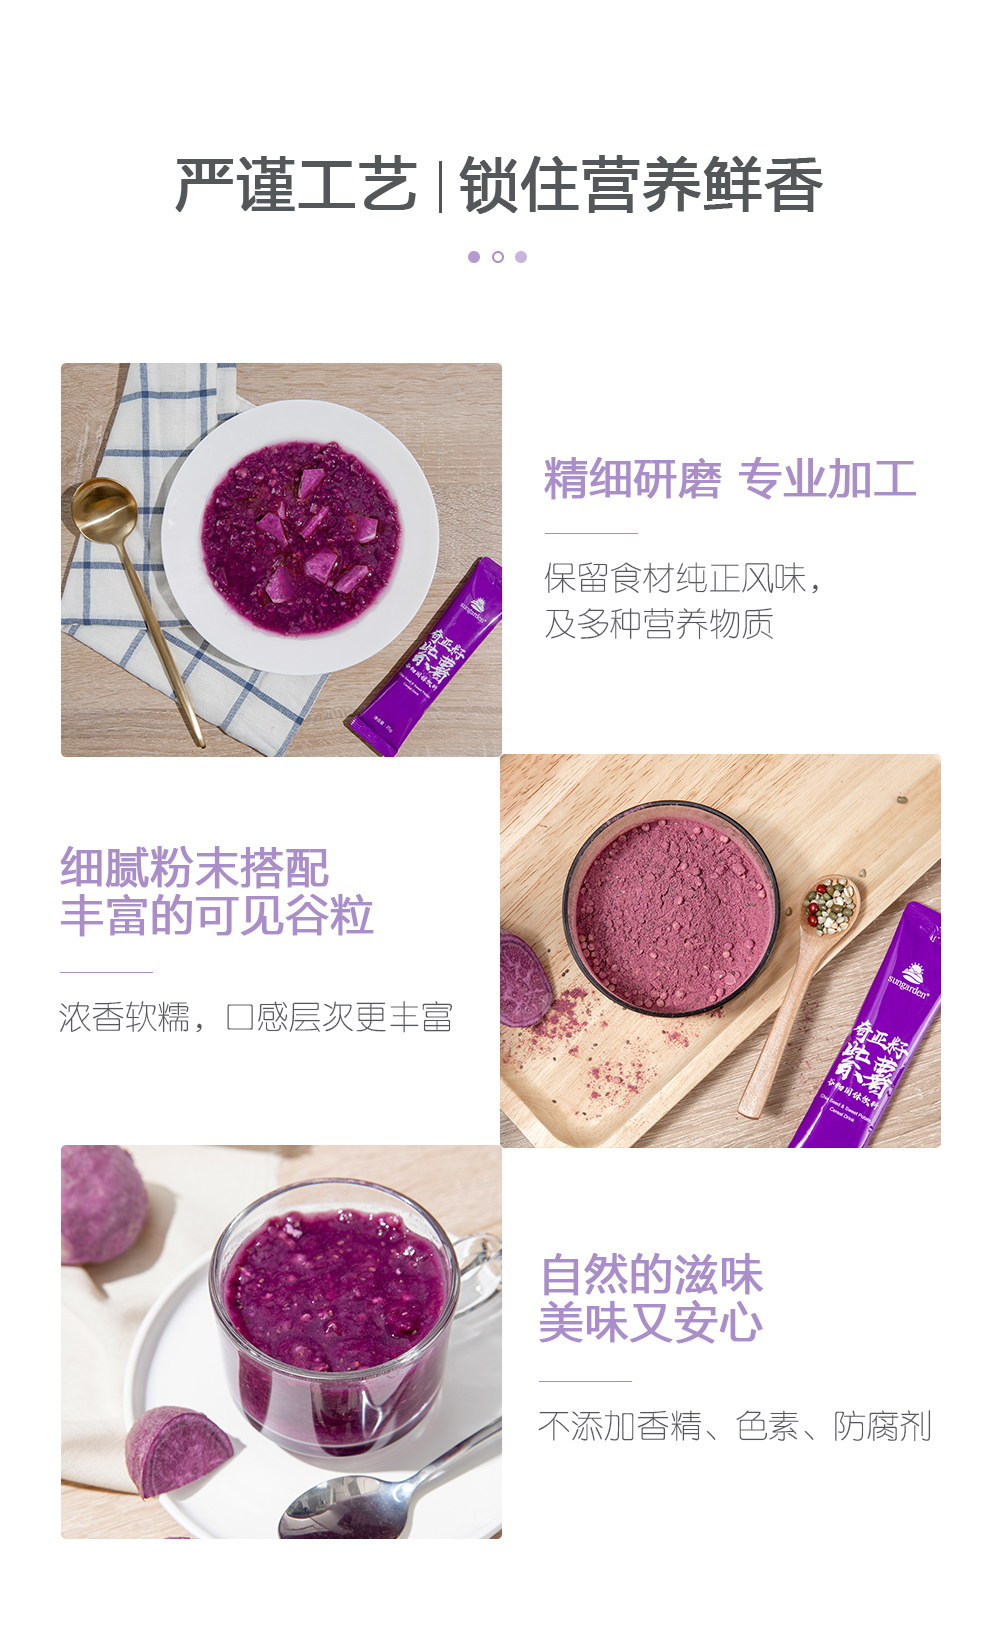 紫薯代餐官网-紫薯代餐---官网_08